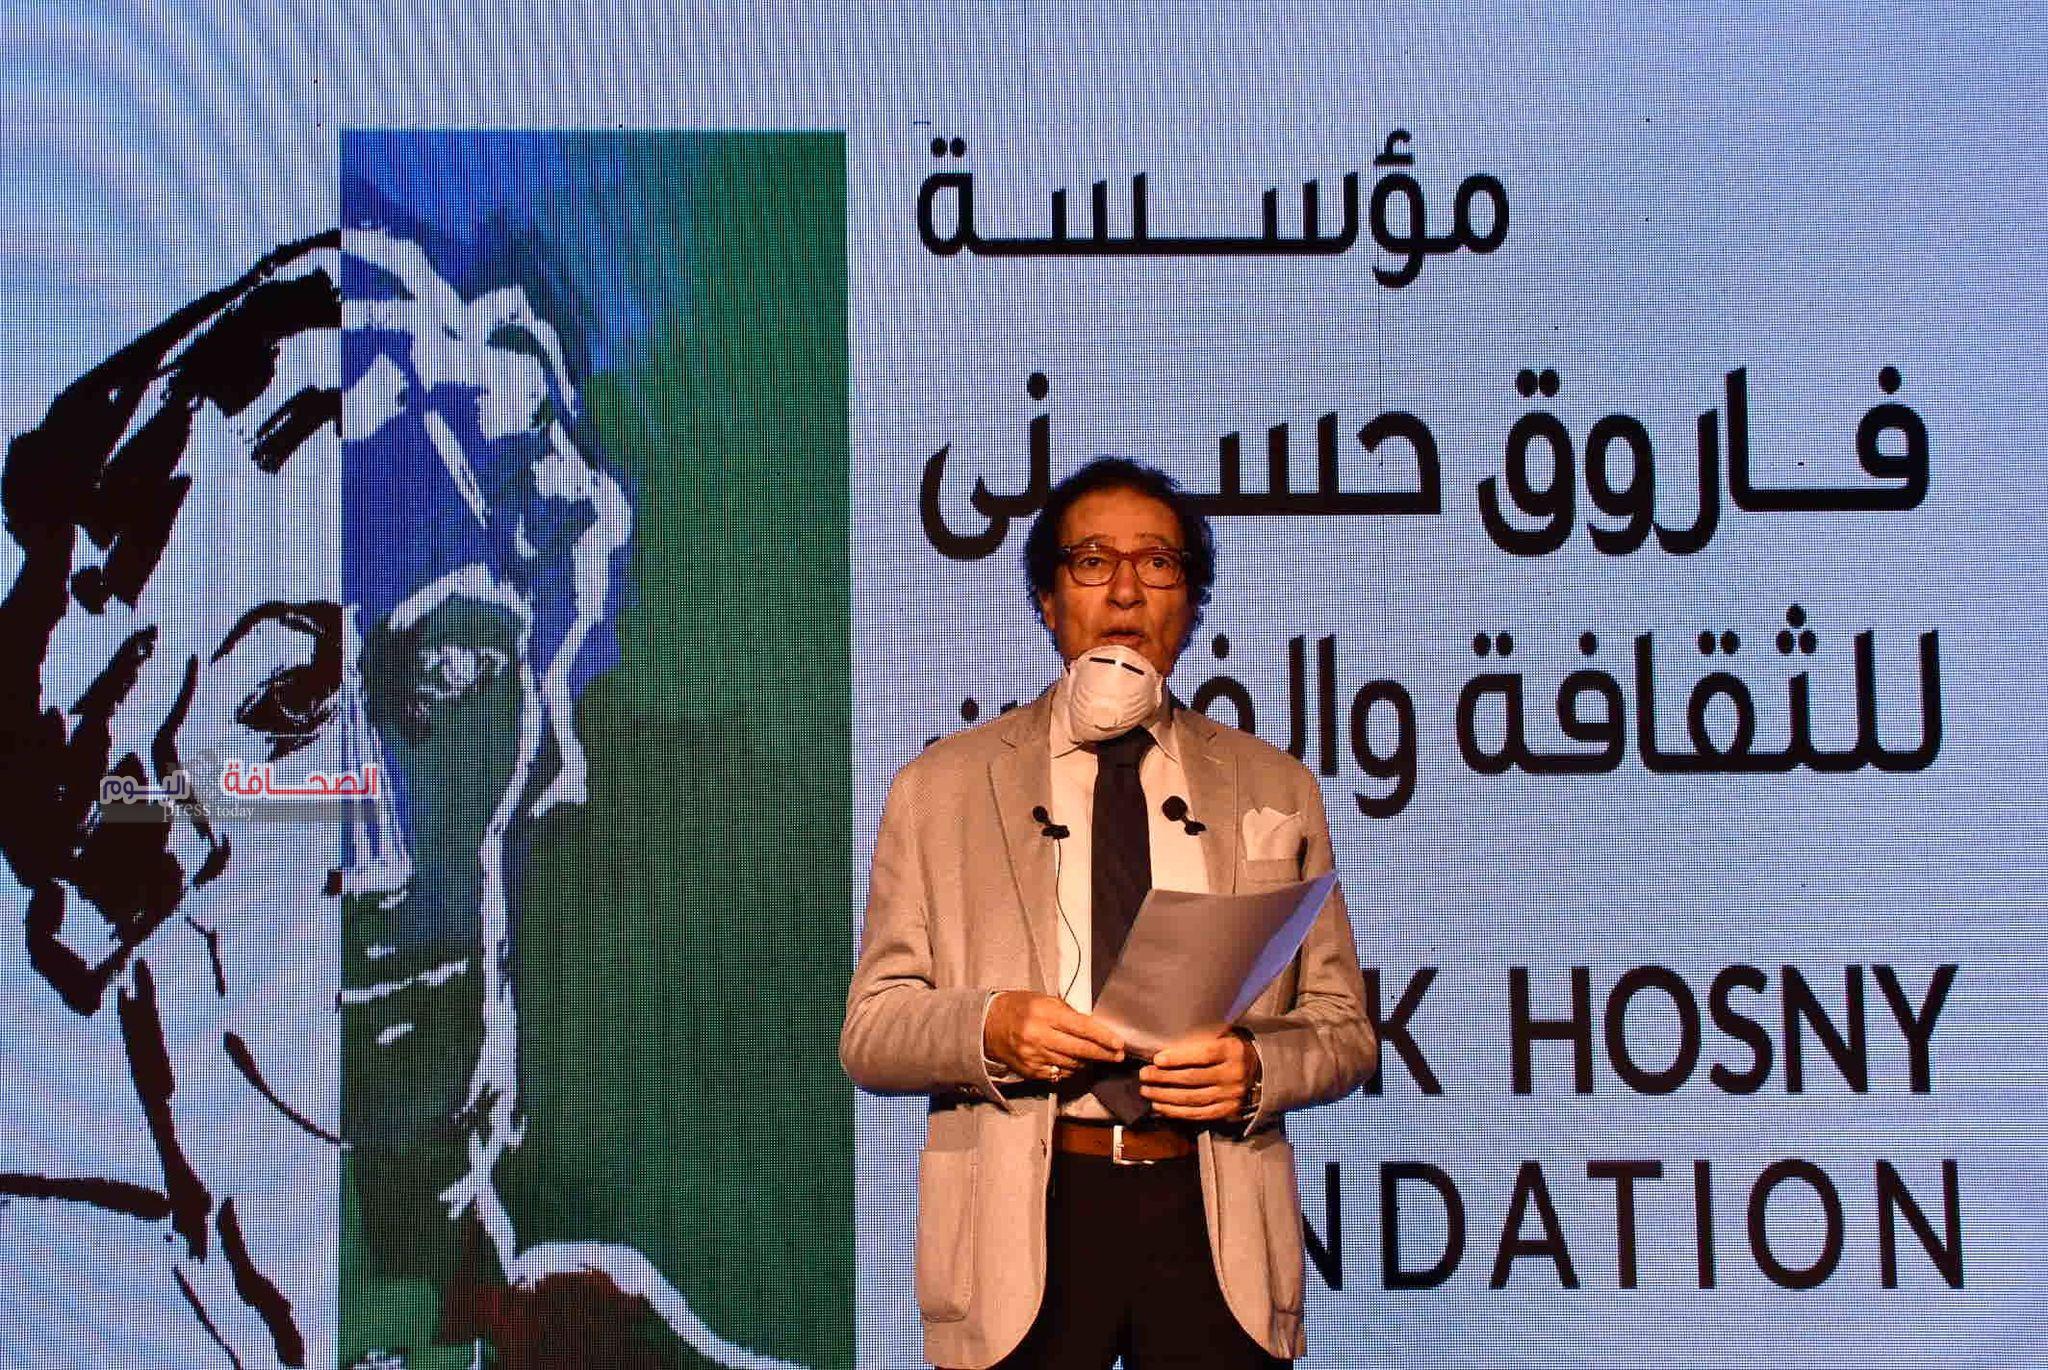 بالصور ..مؤتمر صحفى للدورة الثانية لجائزة الفنان فاروق حسنى للفنون والثقافة